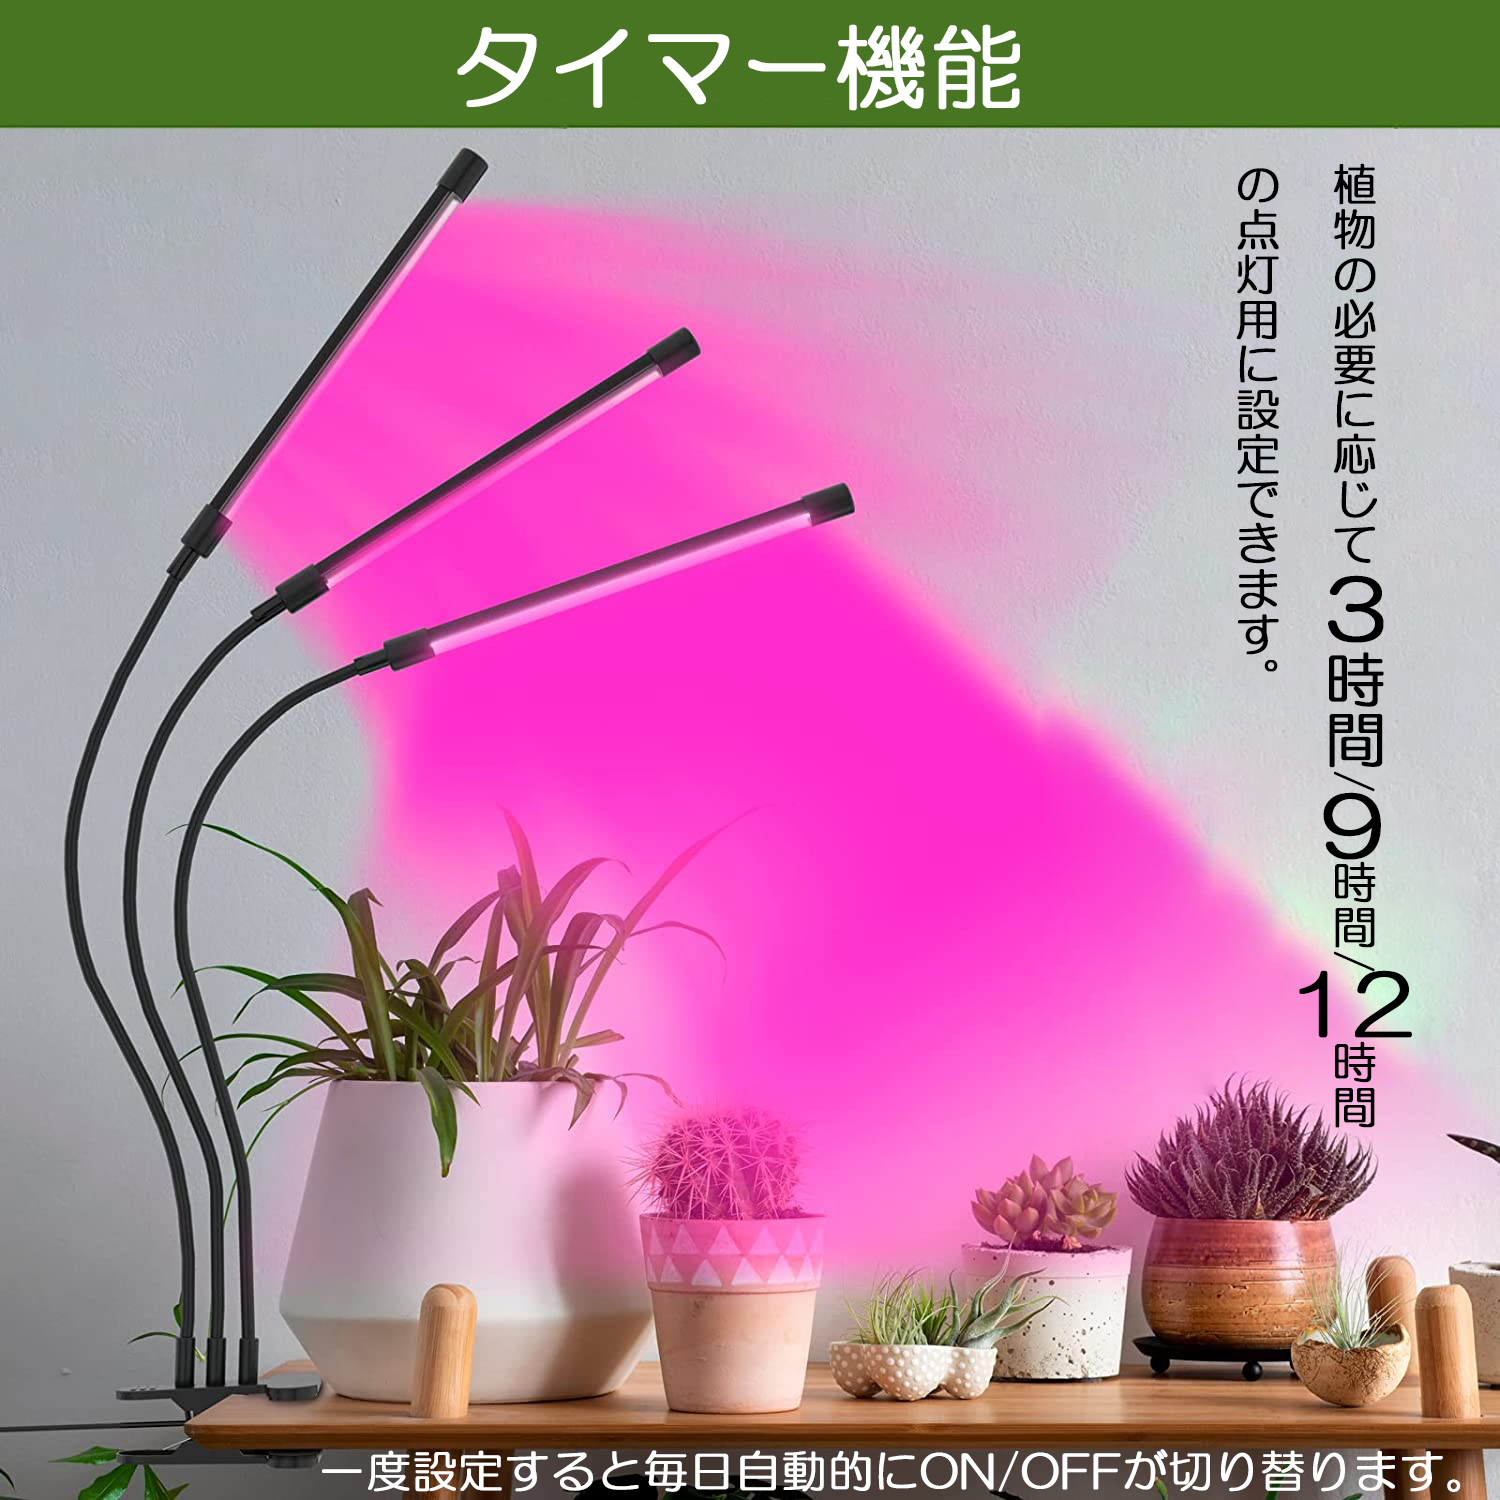 植物育成ライト LED植物育成灯 室内栽培ランプ 3つ照明モード 9段階調